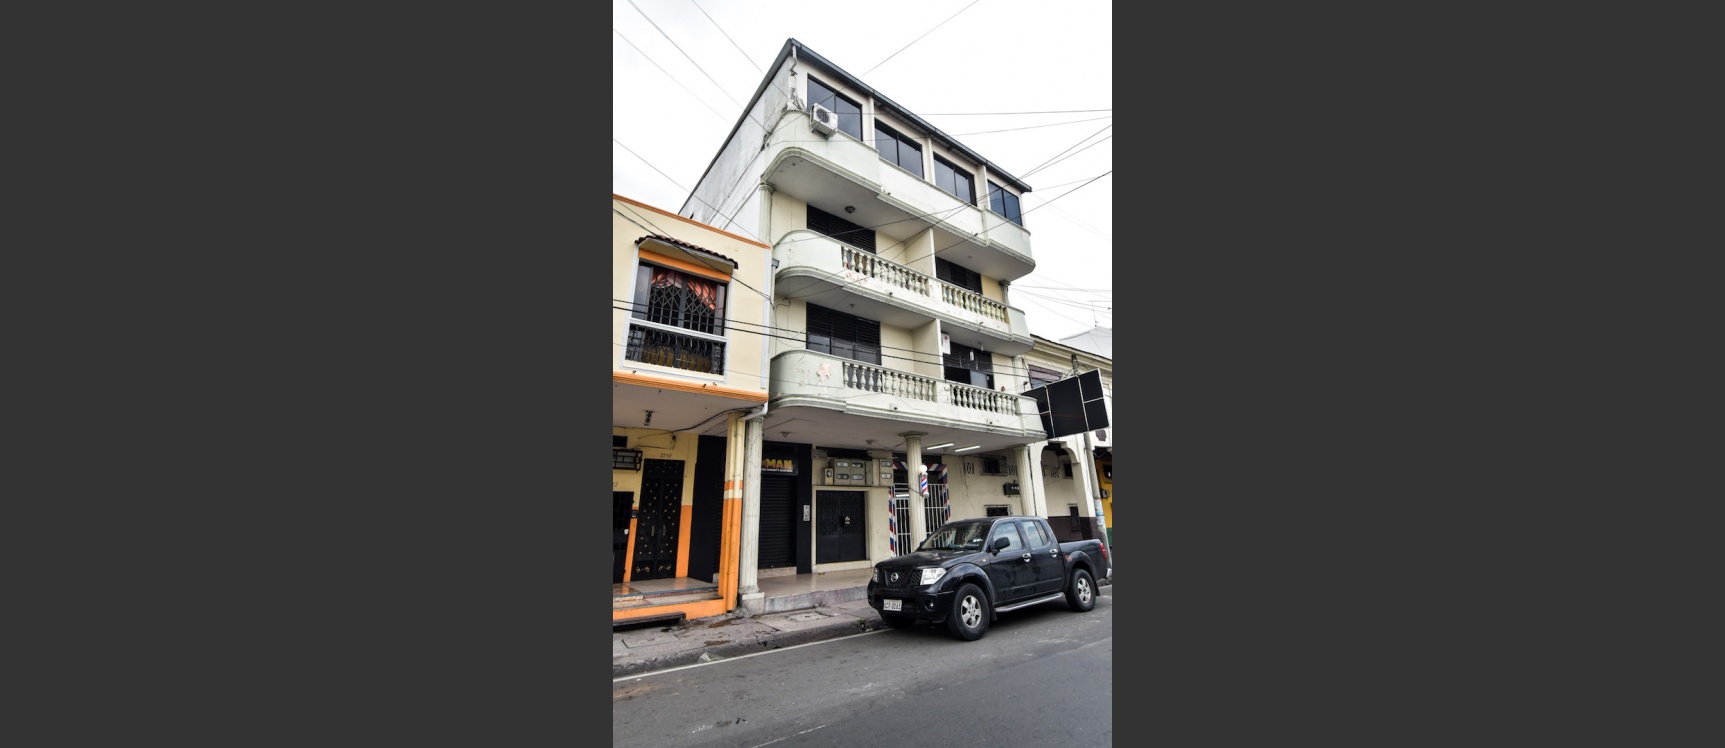 GeoBienes - Edificio en Venta, ubicado en el Centro de Guayaquil - Plusvalia Guayaquil Casas de venta y alquiler Inmobiliaria Ecuador